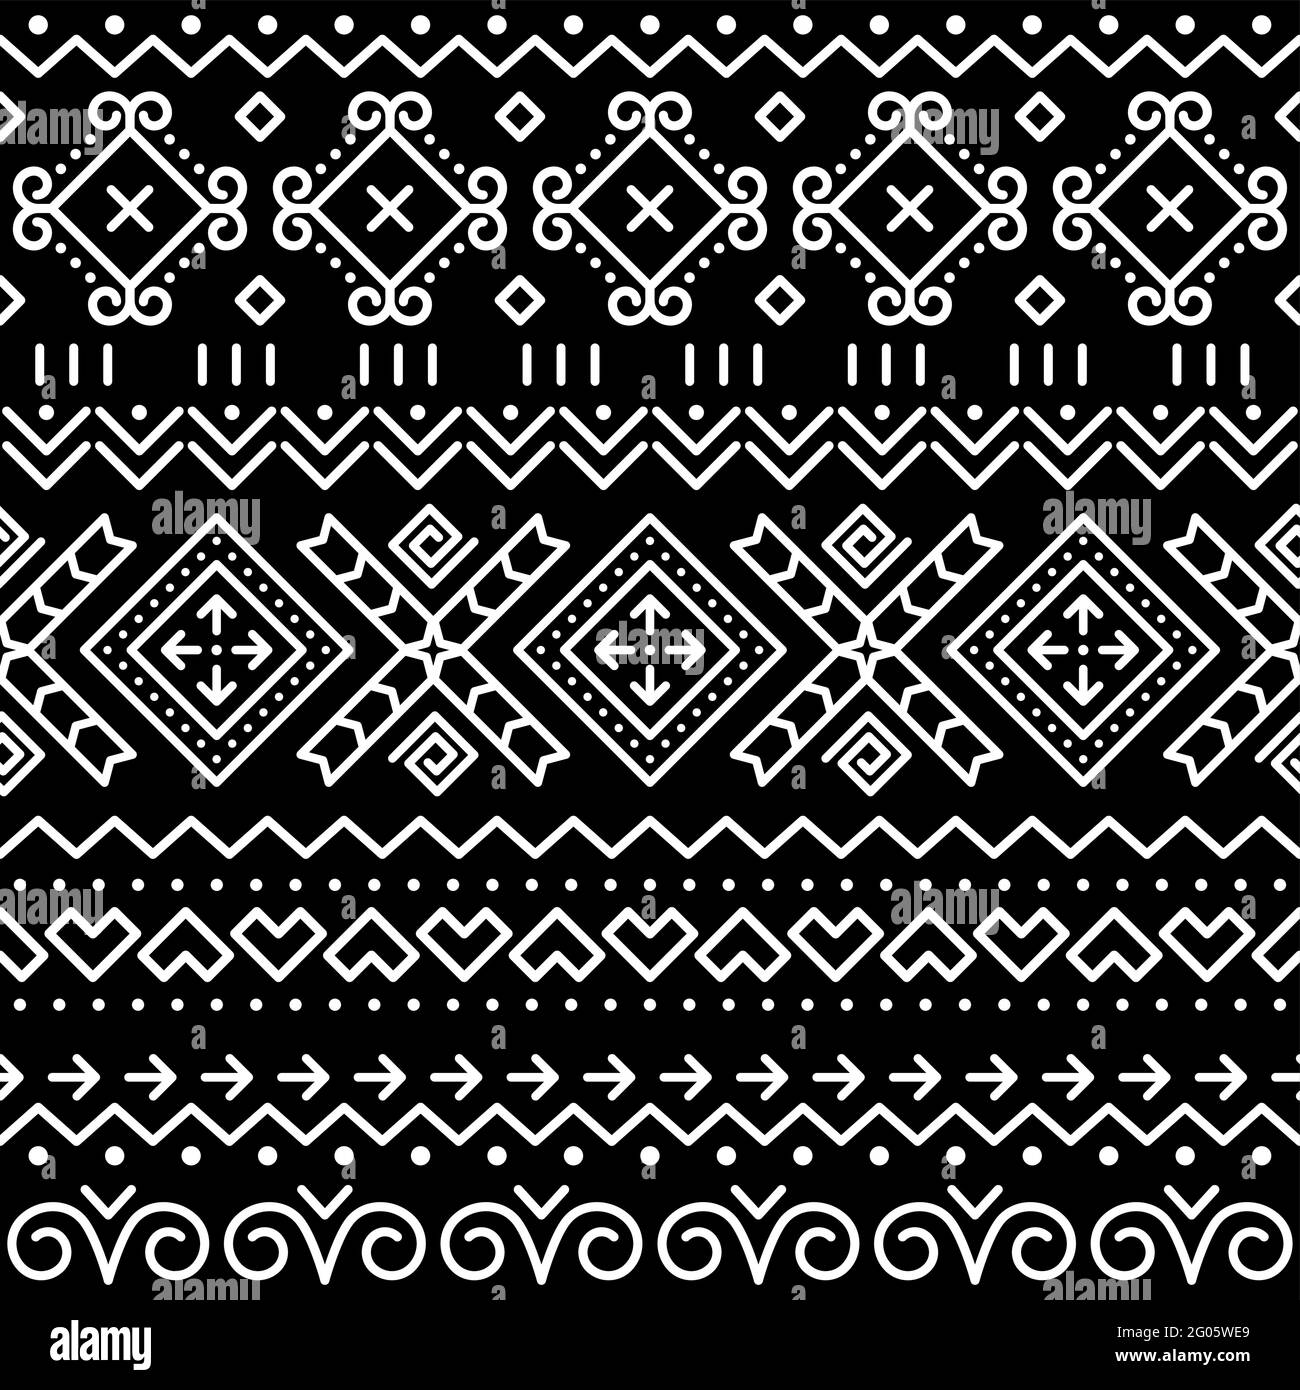 Volkskunst Vektor nahtlose geometrische Muster aus der Slowakei, ethnische Ornament von traditionellen gemalten Häusern aus dem Dorf Cicmany in Zilina Region inspiriert Stock Vektor